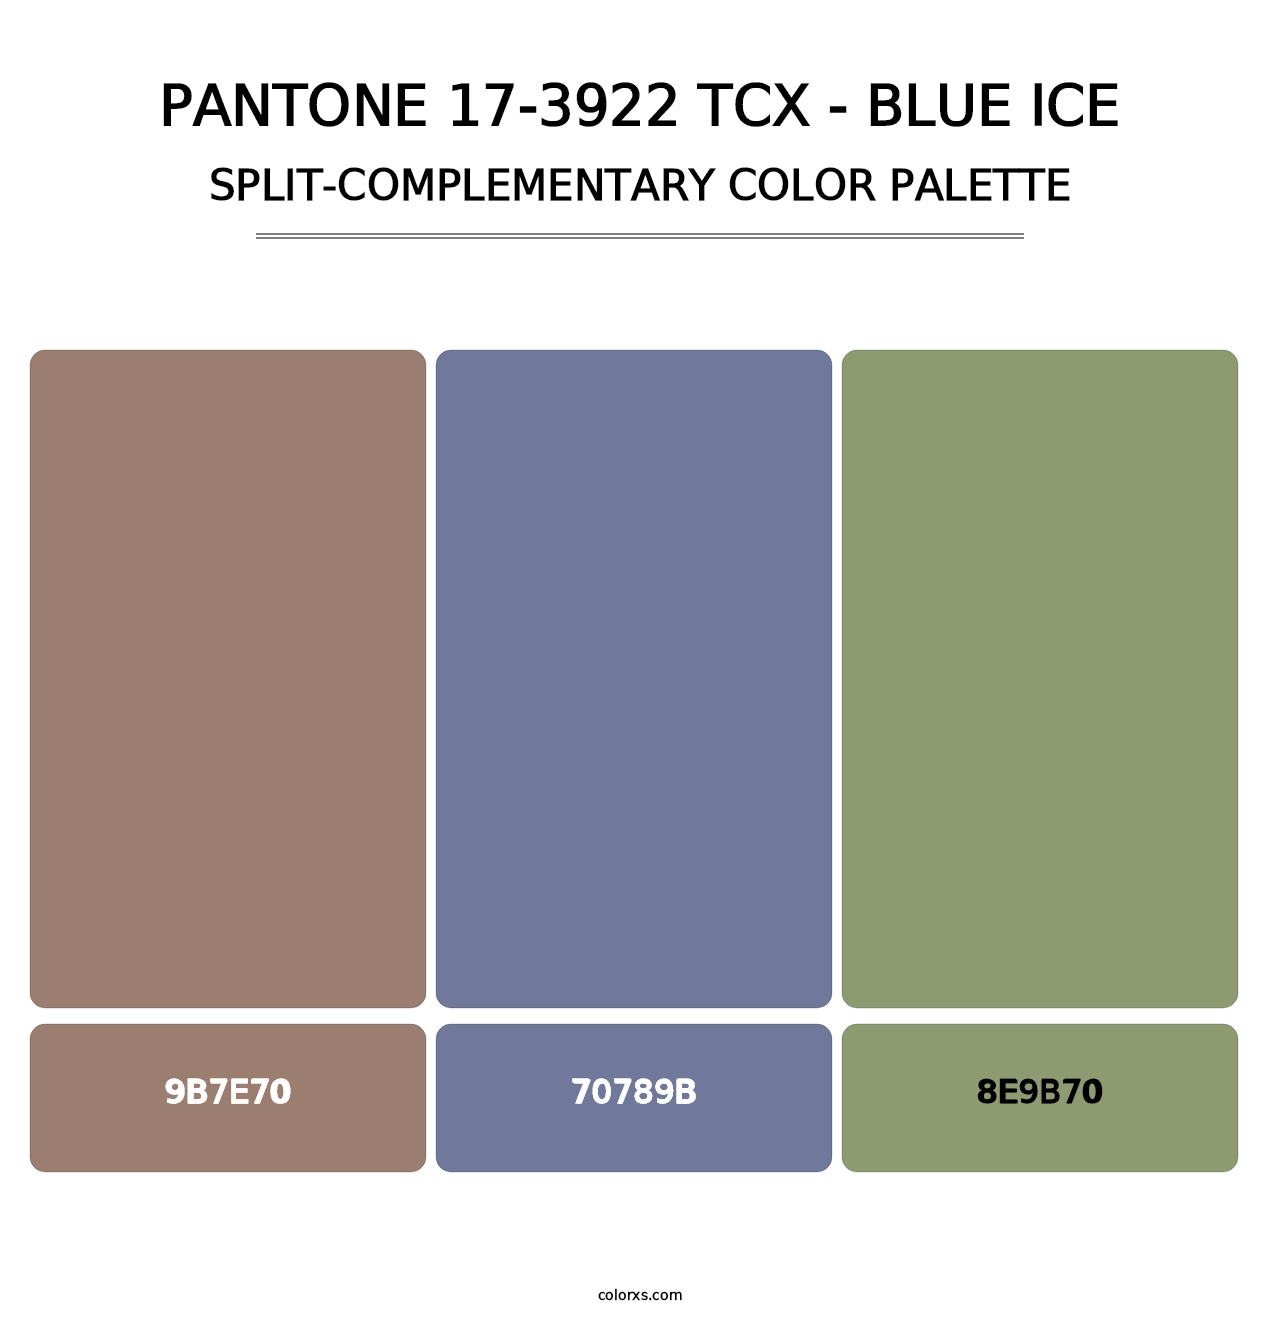 PANTONE 17-3922 TCX - Blue Ice - Split-Complementary Color Palette